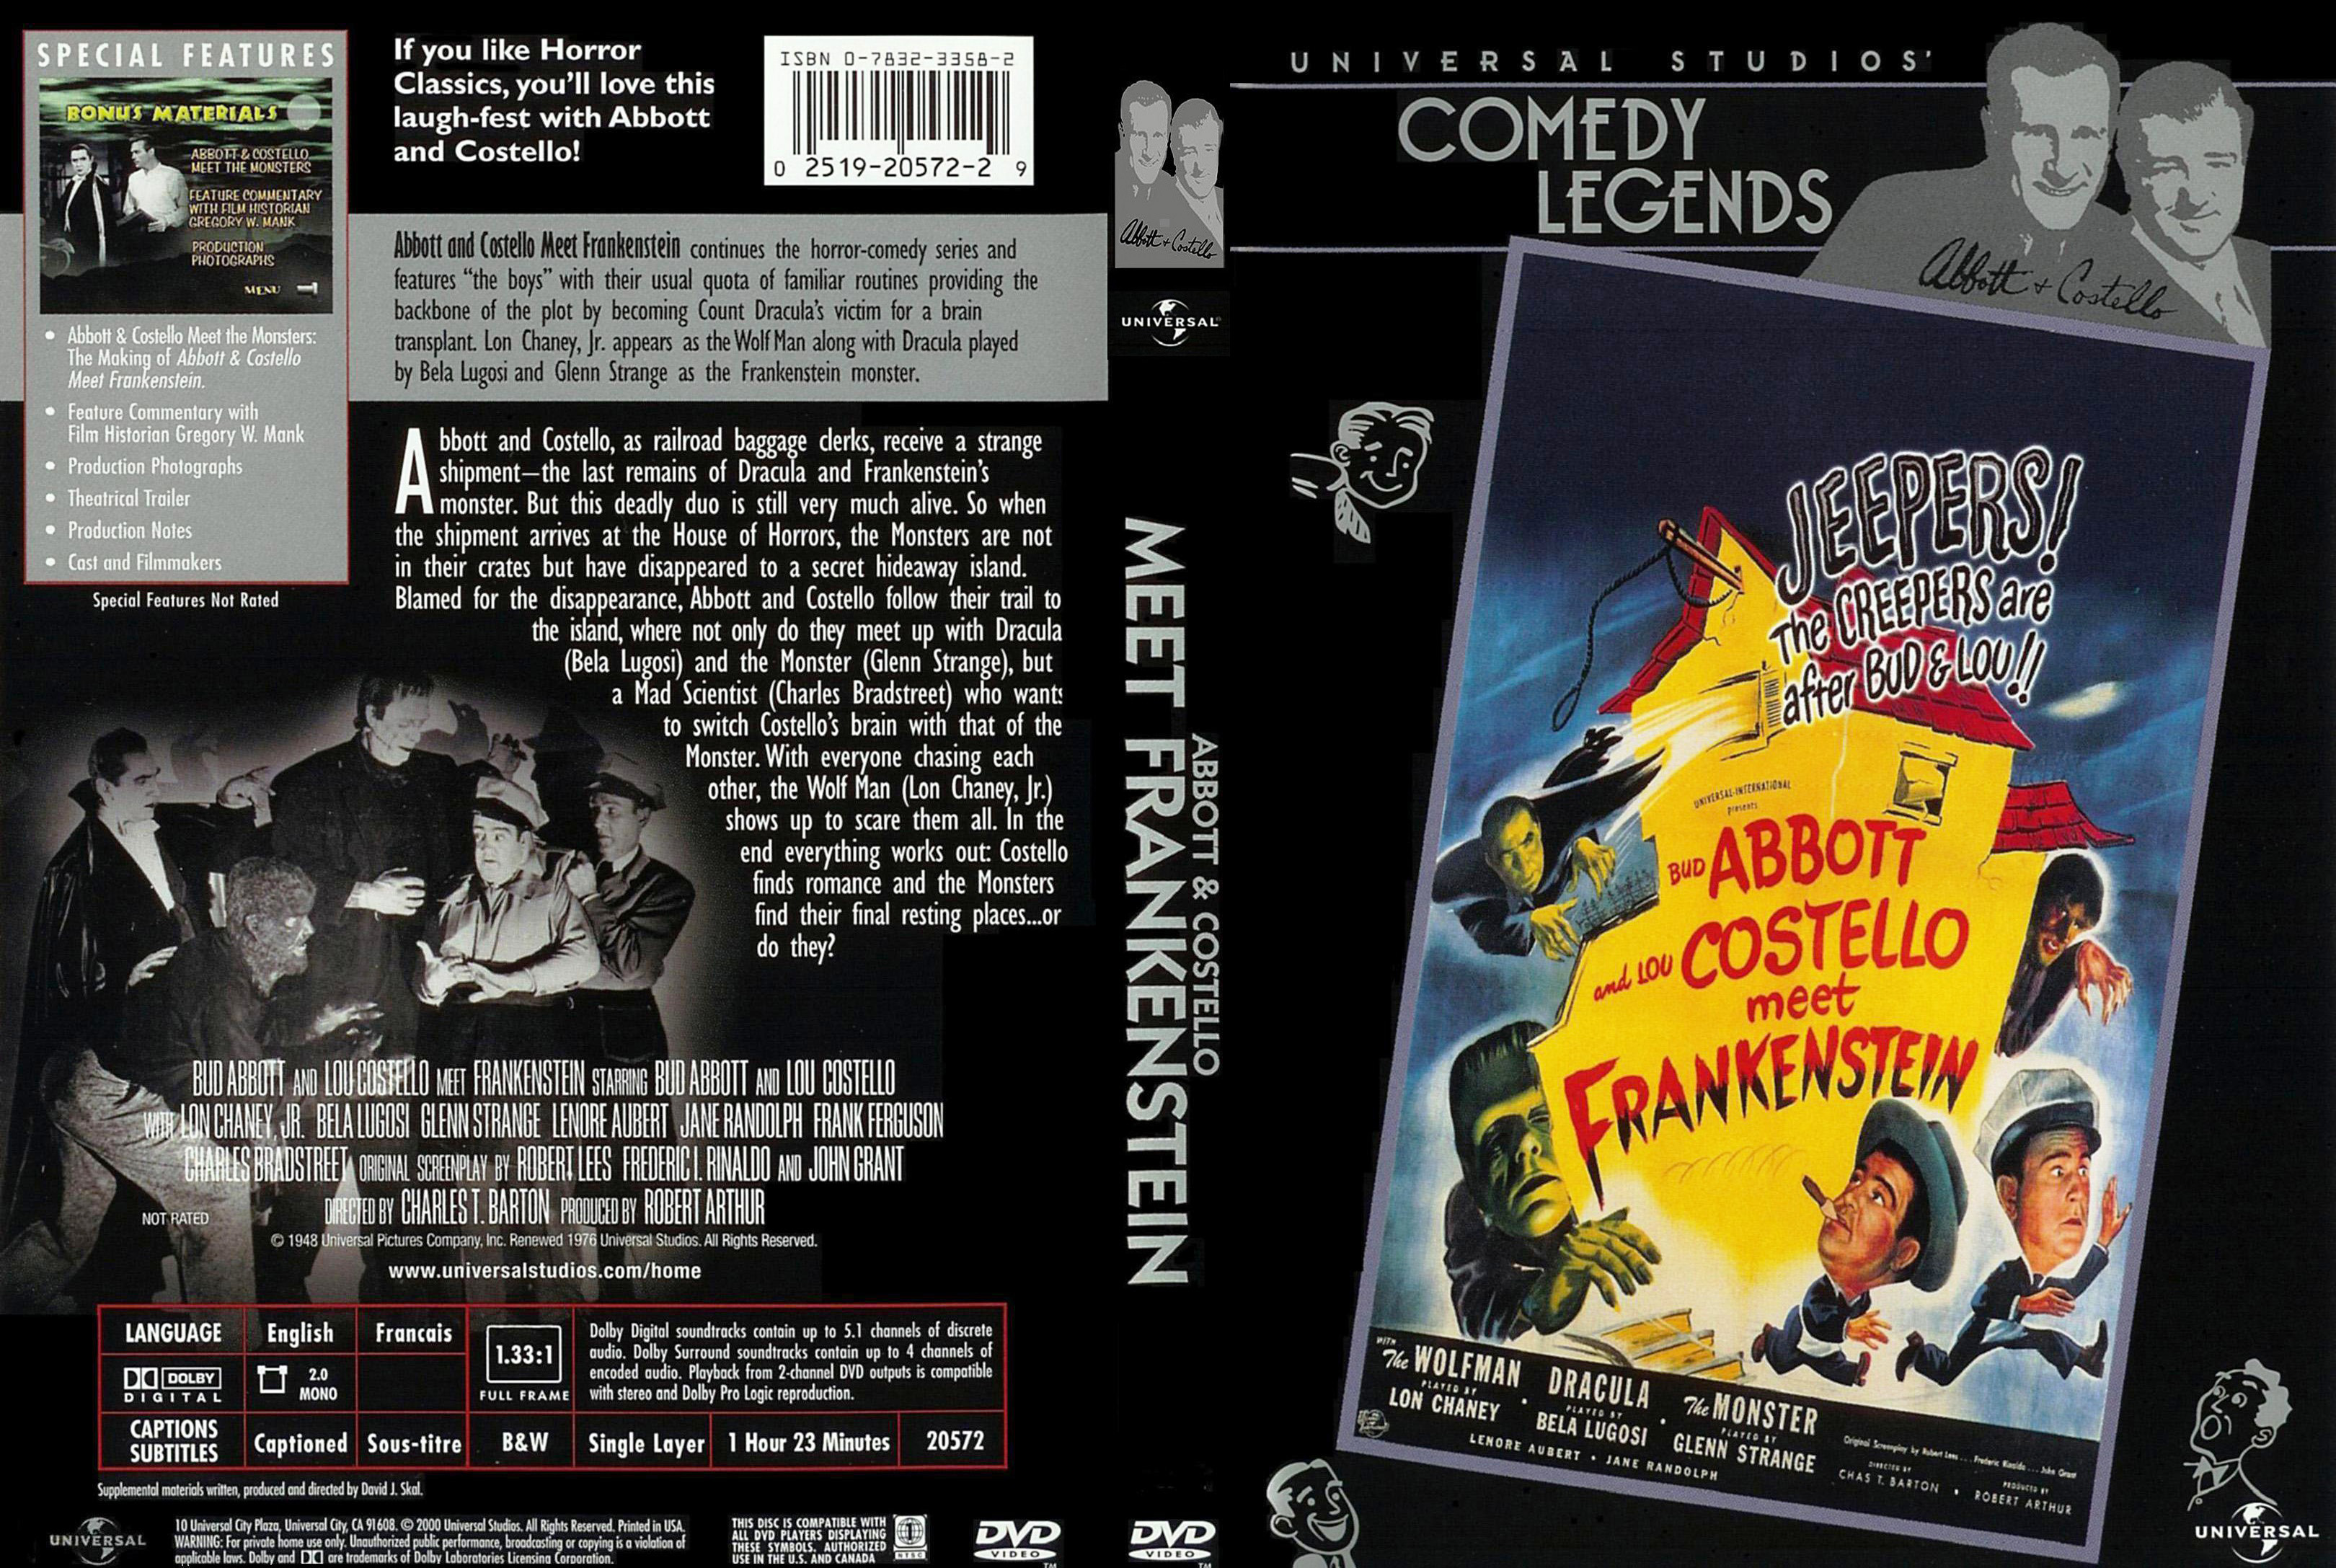 Abbott & Costello meet Frankenstein - 1948